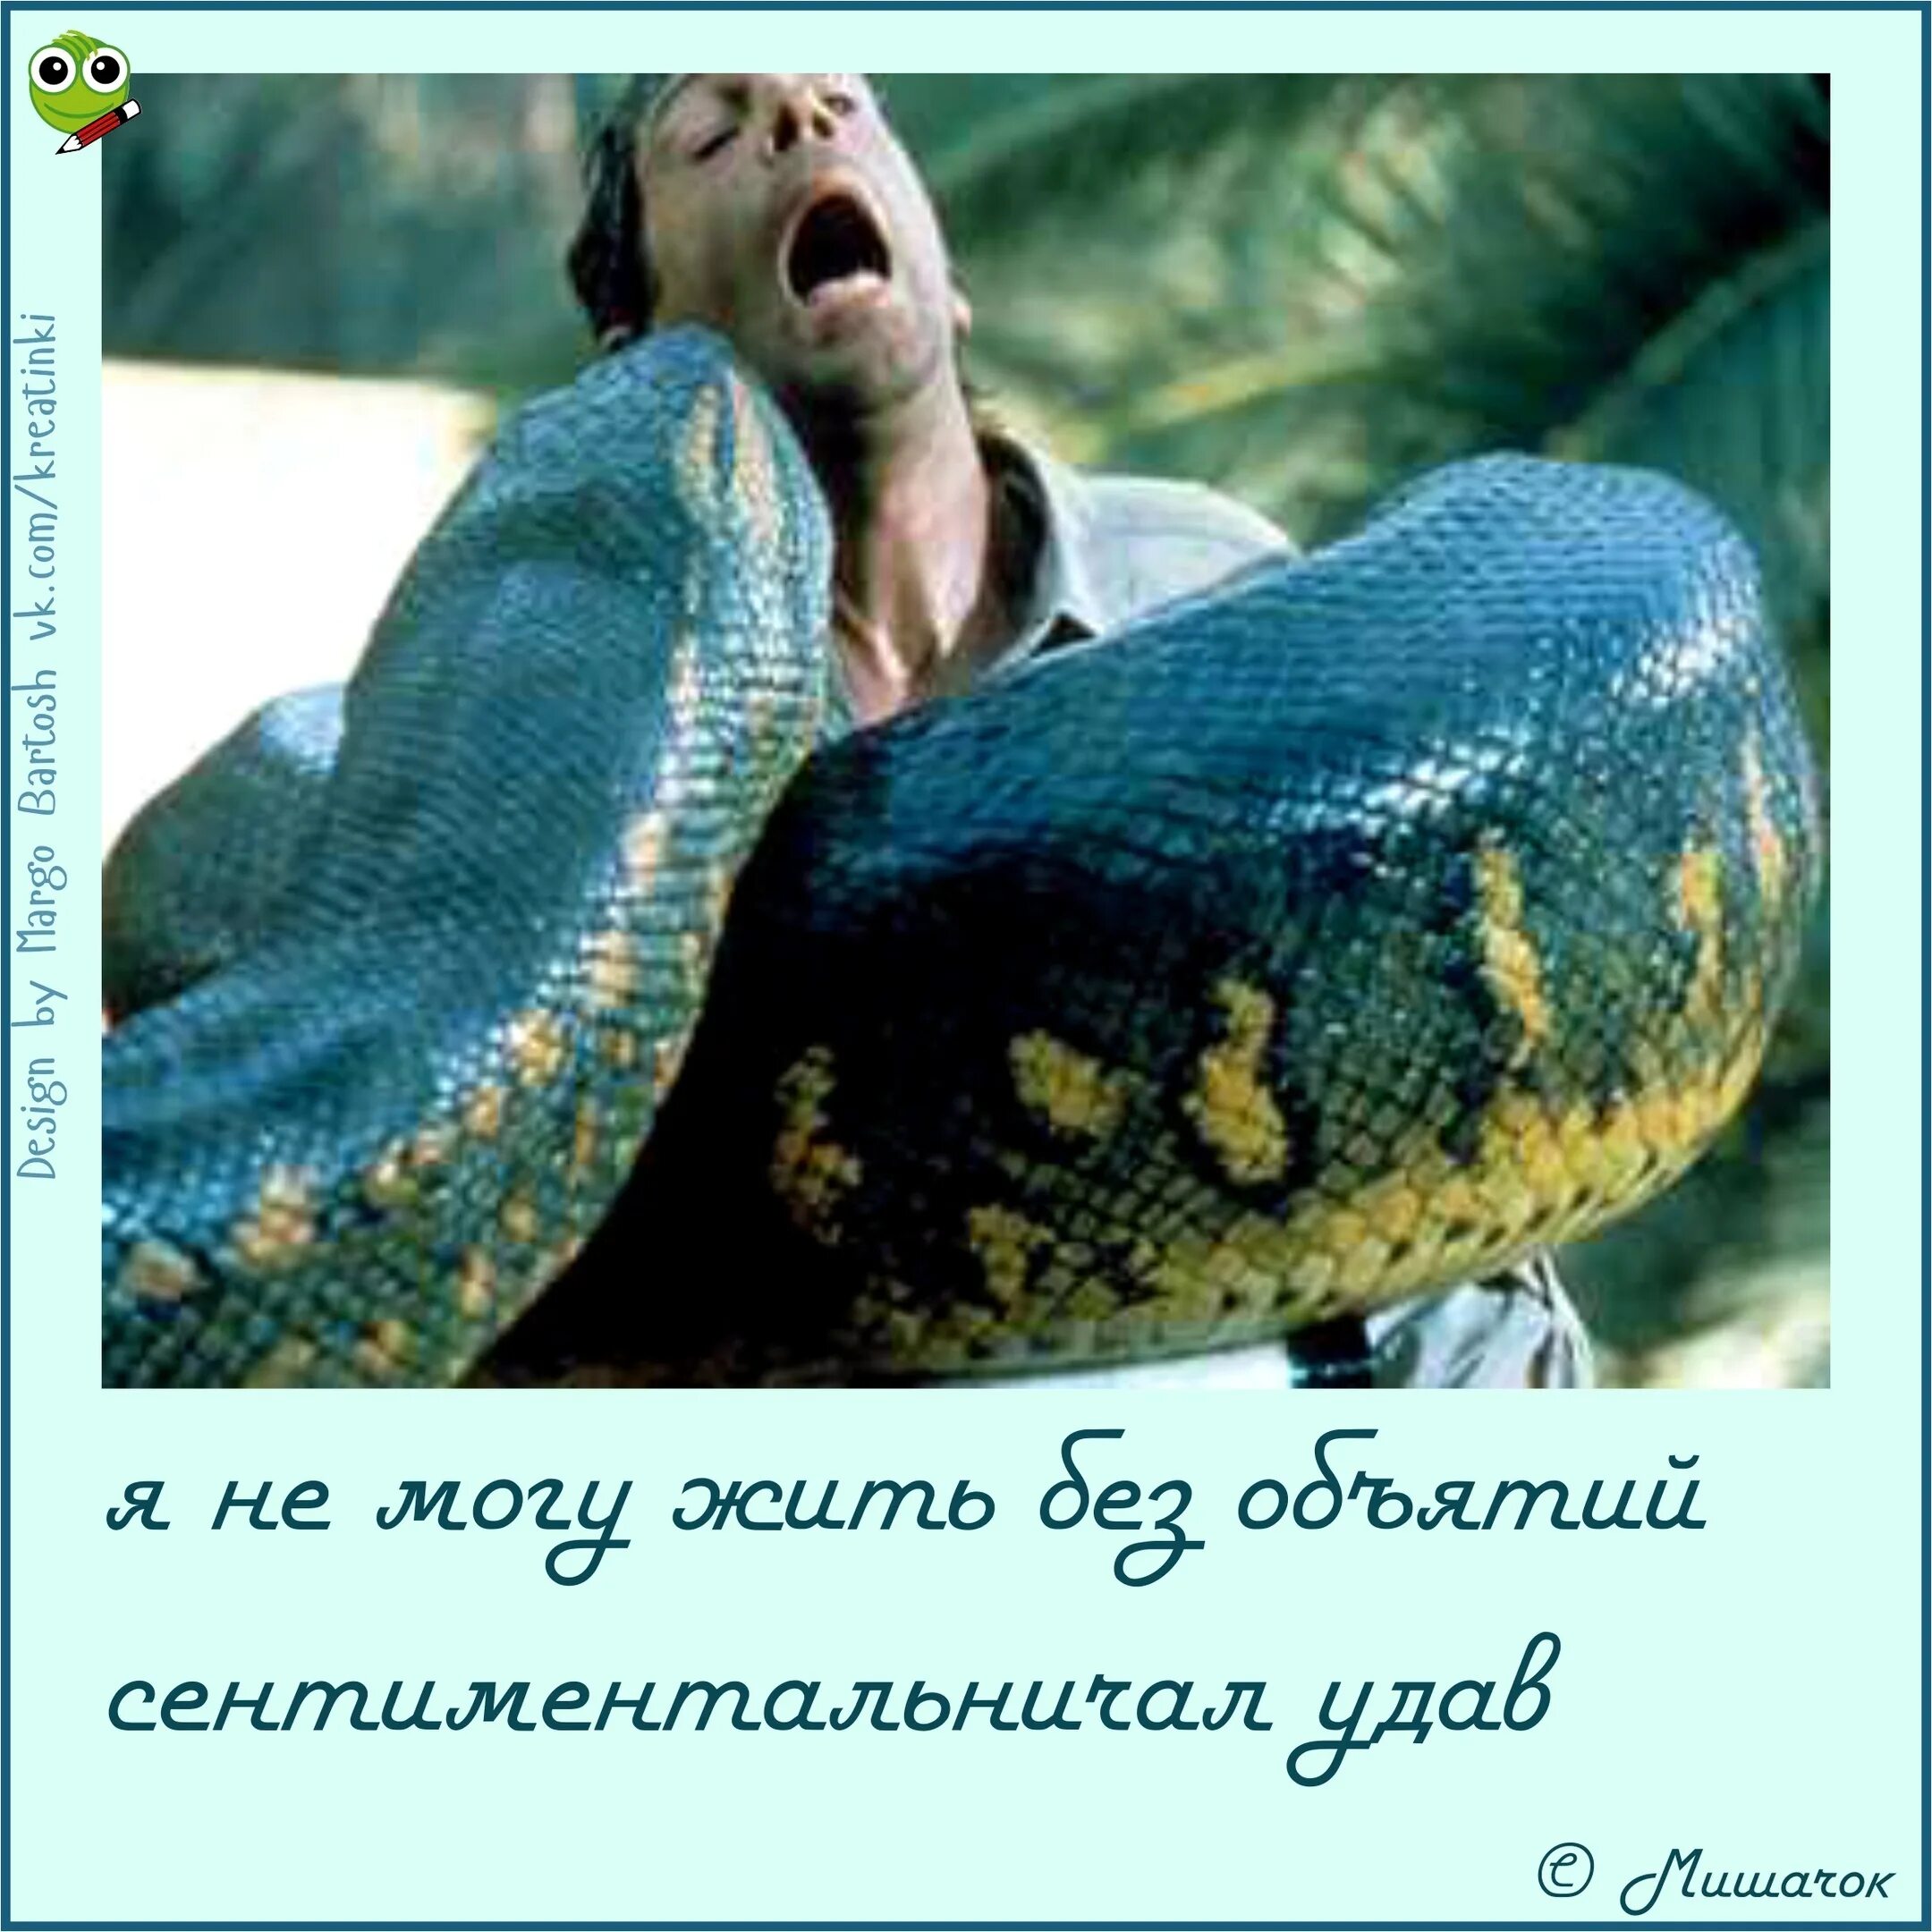 Анаконда змея. Джонатан Хайд Анаконда 1997. Питон ТИТАНОБОА. Сколько метров змея